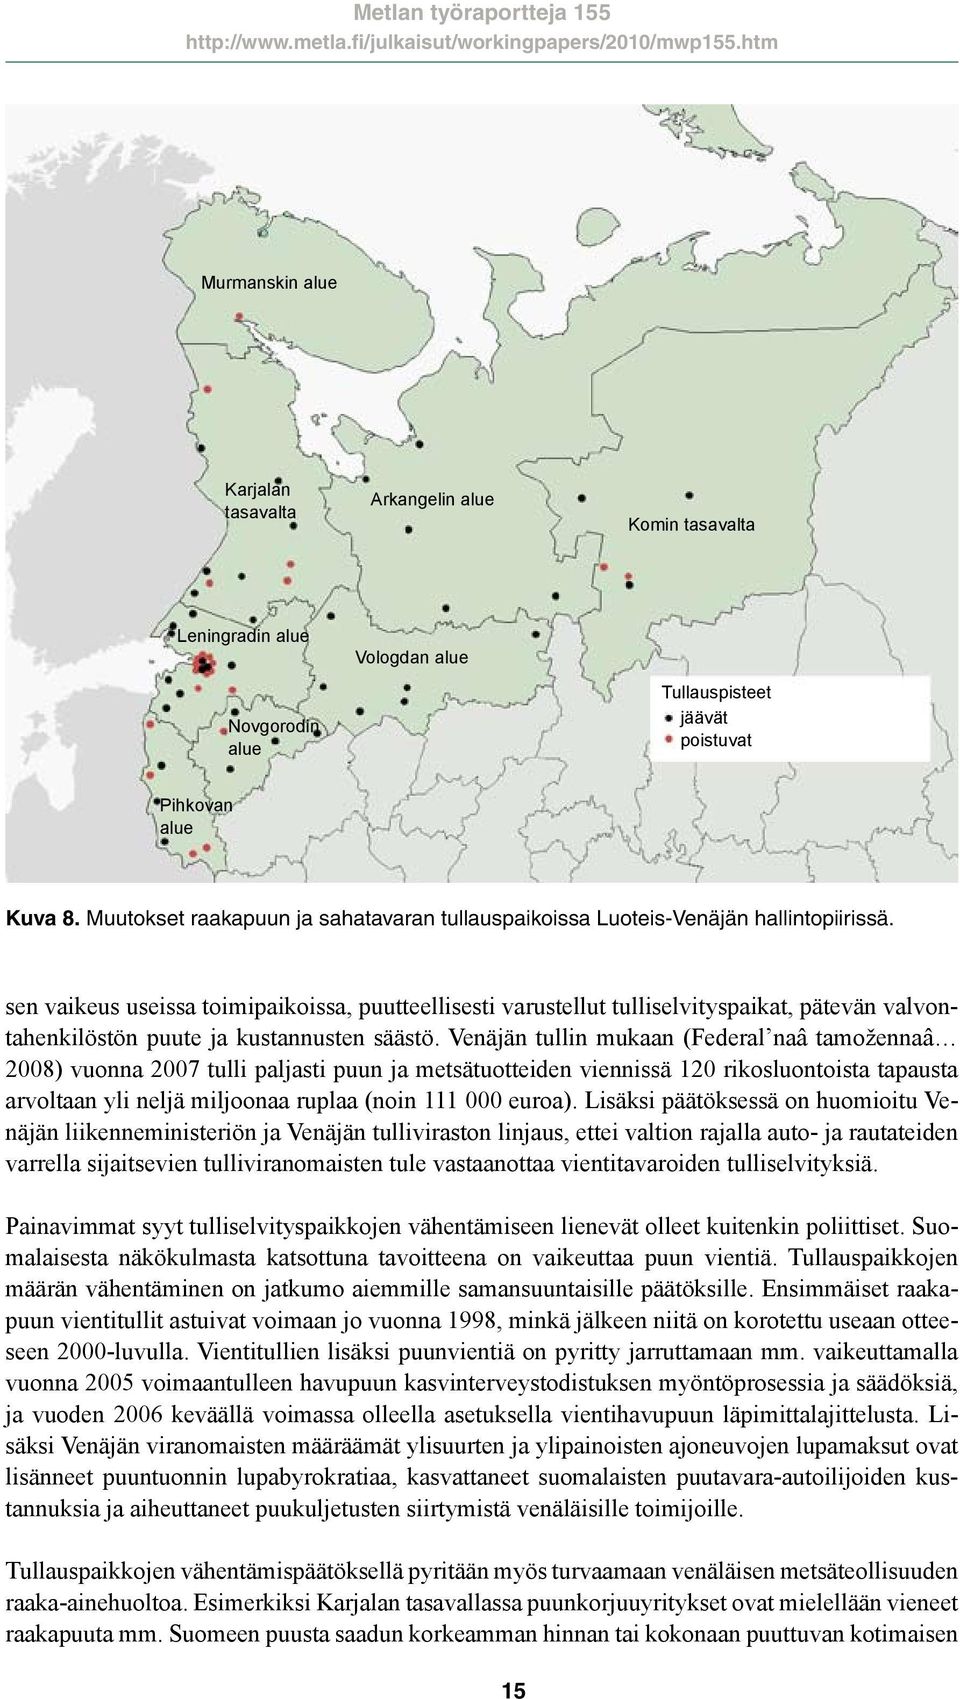 Muutokset raakapuun ja sahatavaran tullauspaikoissa Luoteis-Venäjän hallintopiirissä.